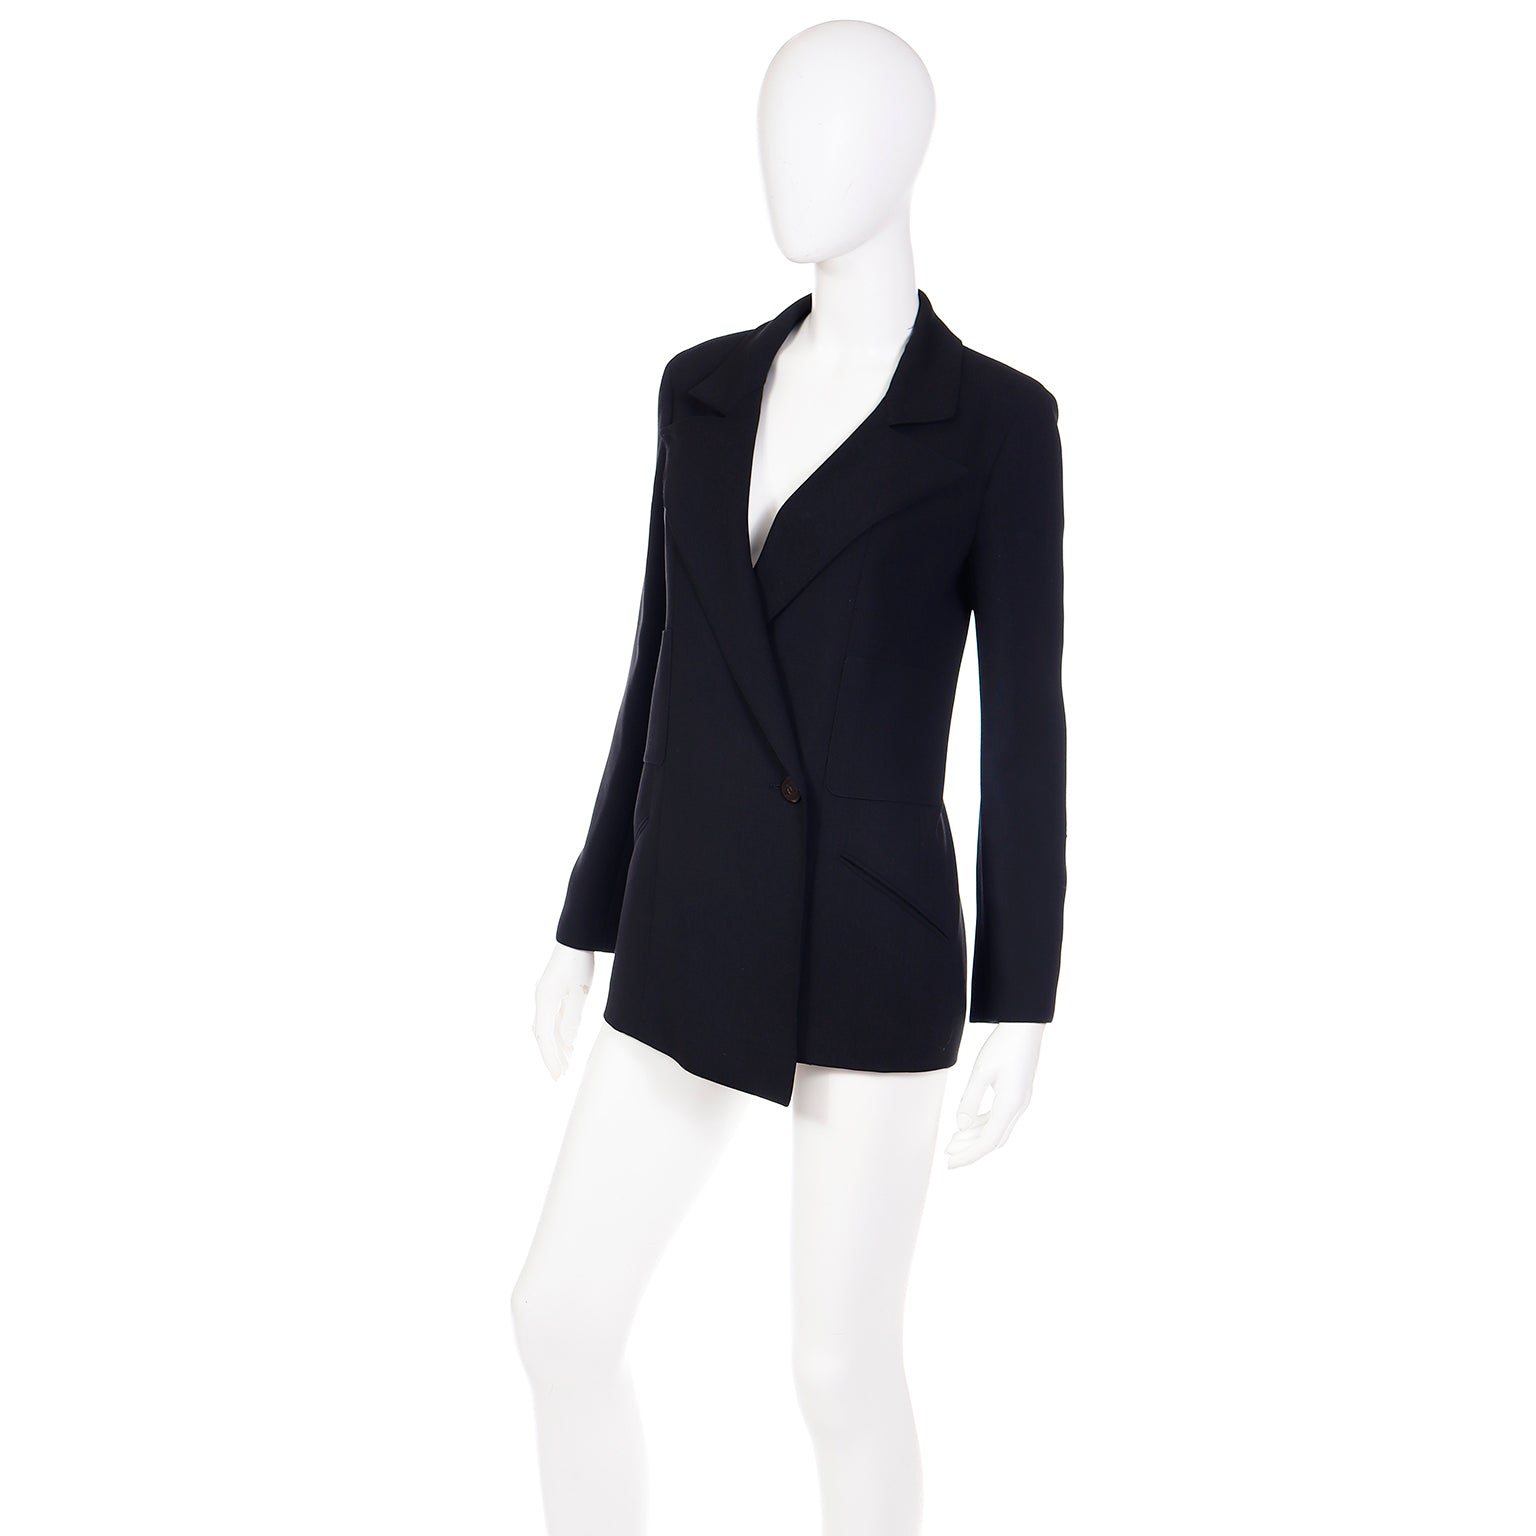 HelensChanel Vintage Nwot Chanel 98P, 1998 Spring Black White Blazer Jacket FR 40 US 4/6